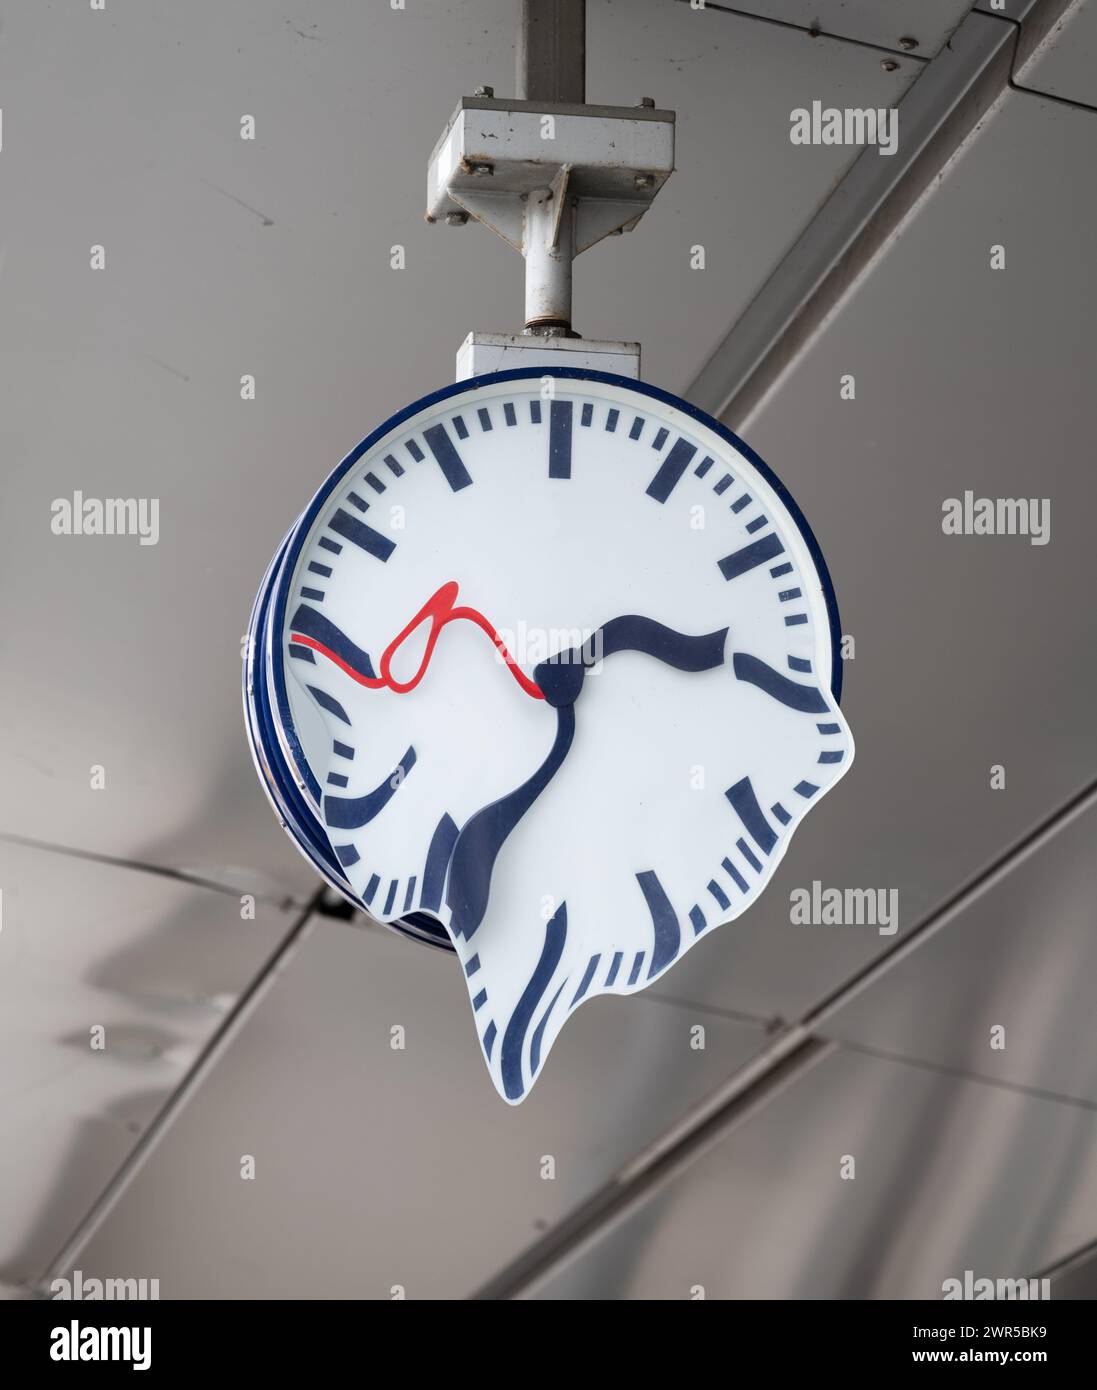 Reloj de la estación de Deutsche Bahn sin logotipo, el tiempo se está acabando Foto de stock